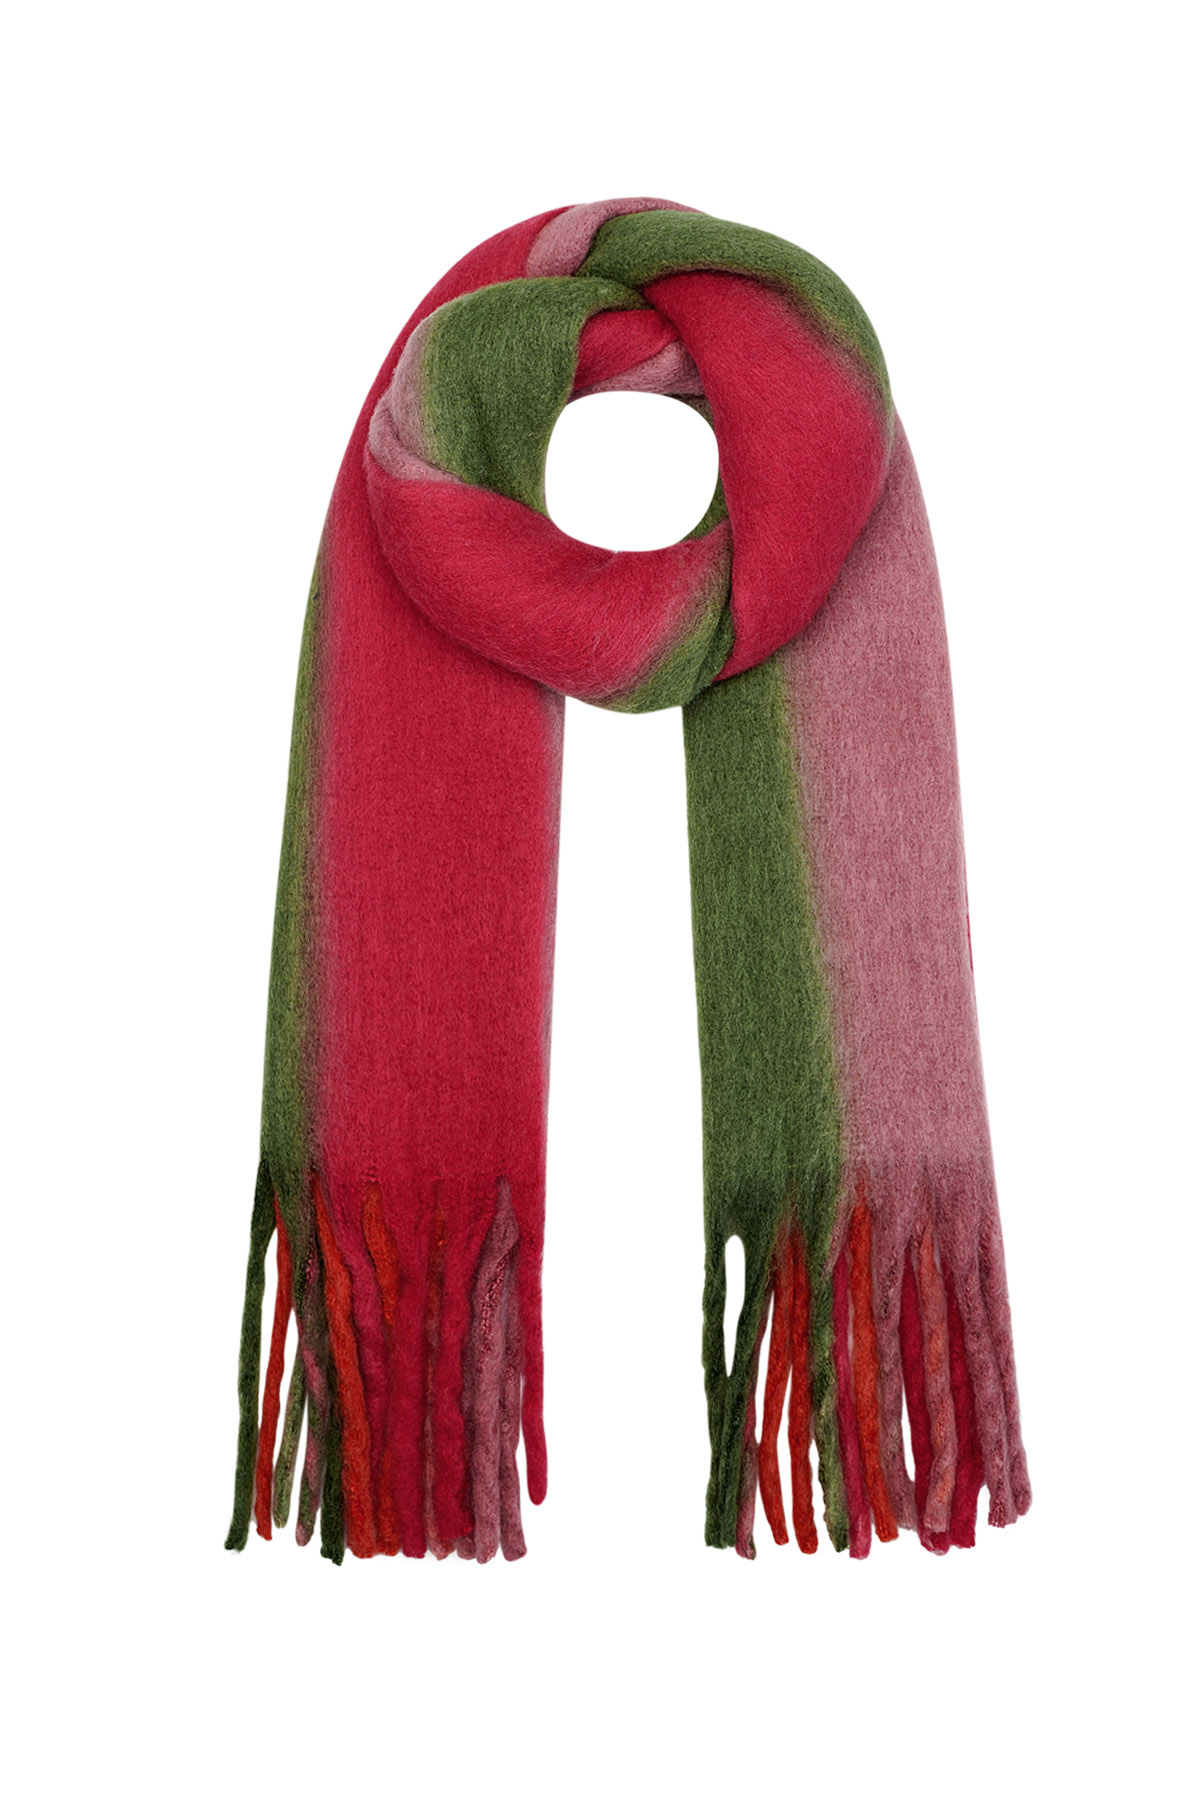 Winterschal Ombré-Farben grün/rot Polyester